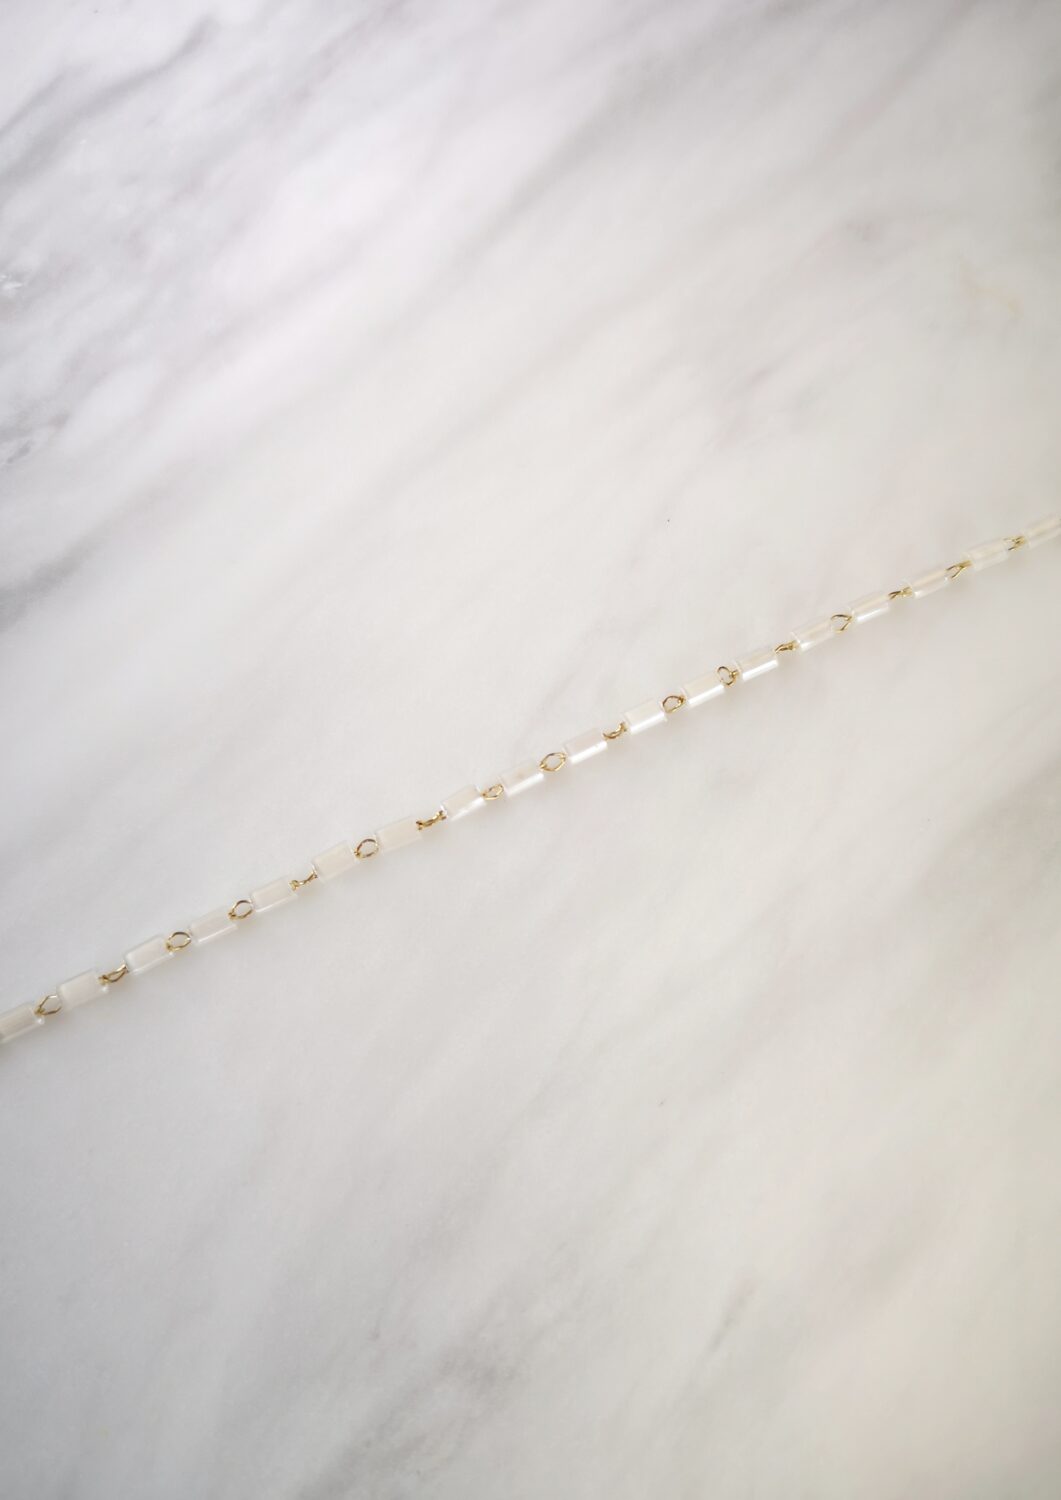 White Crystal Rosary Bracelet